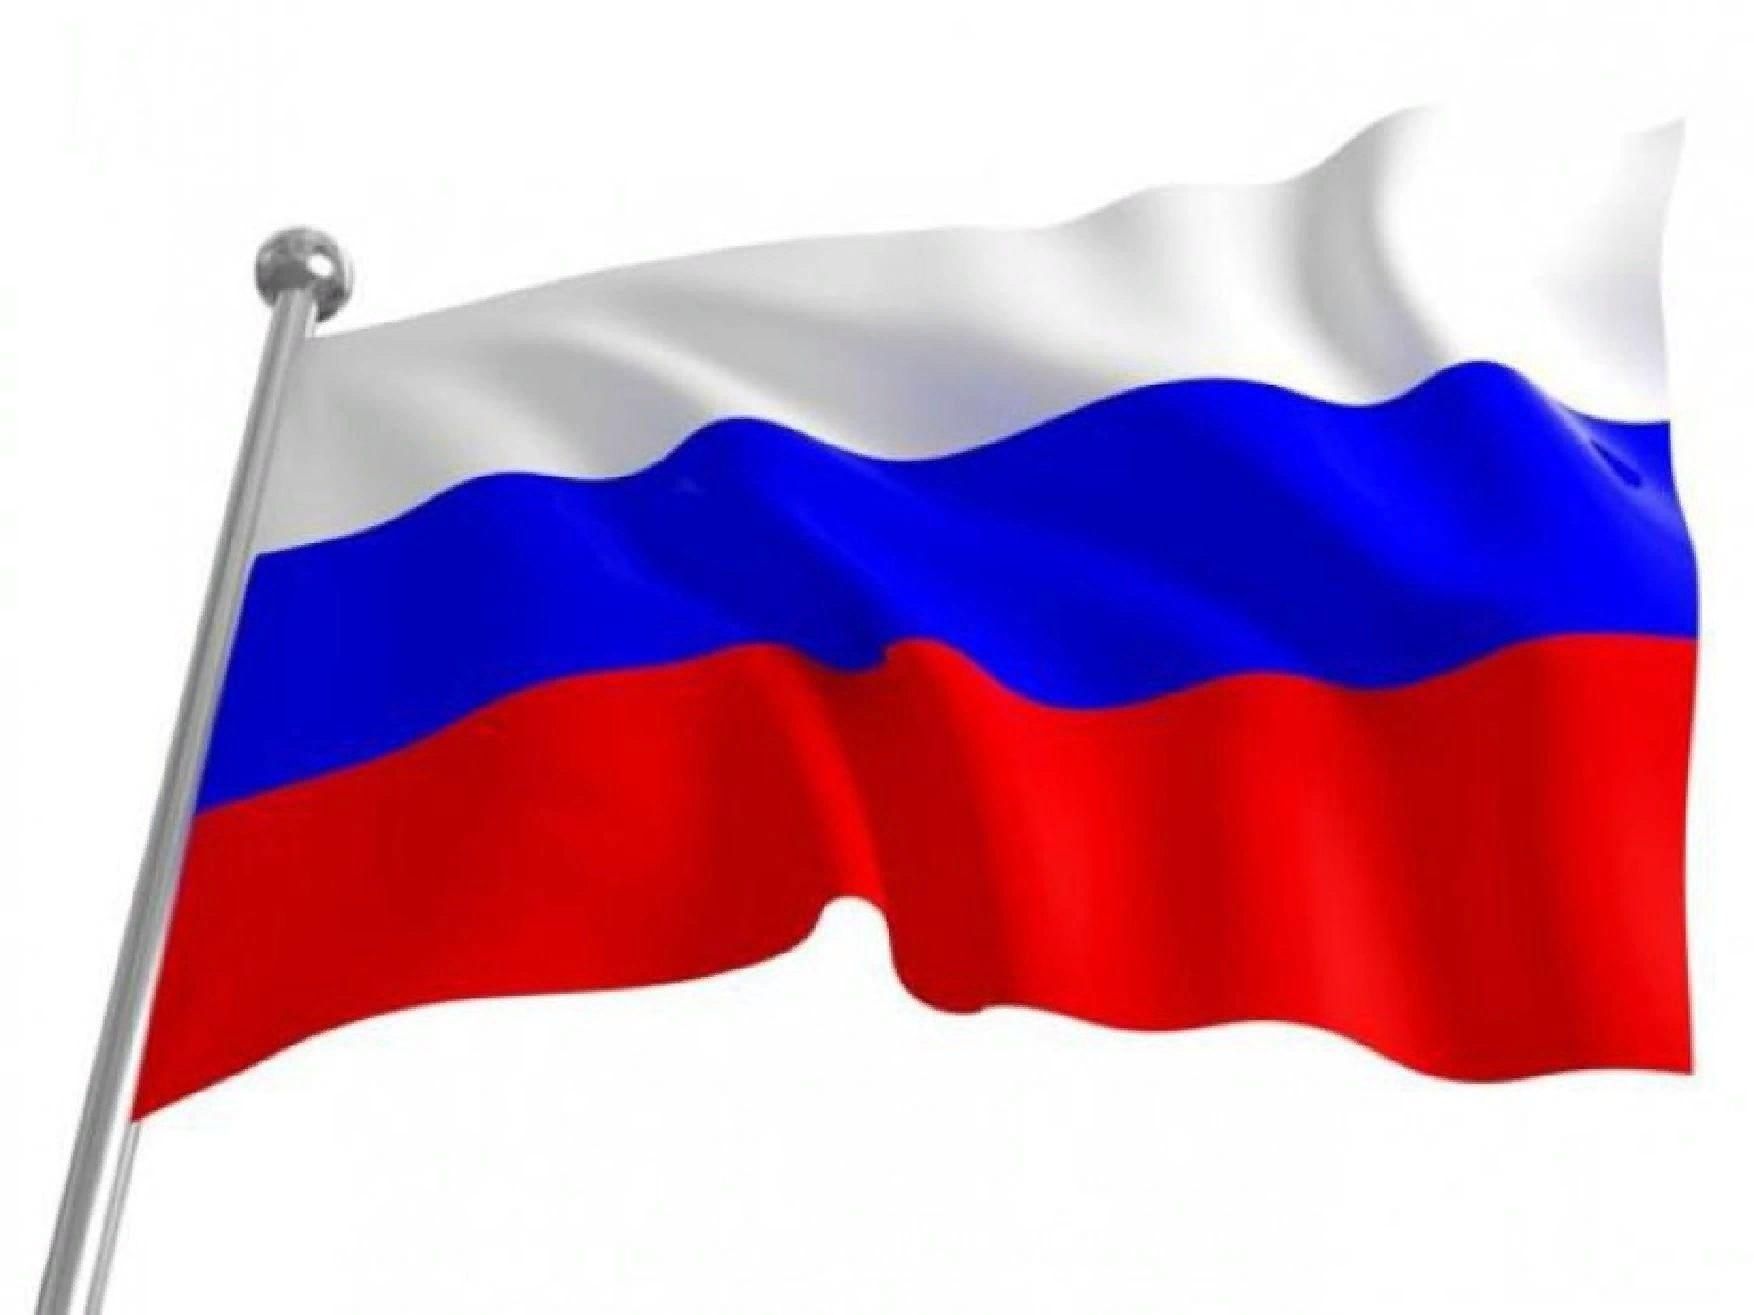 Флаги реют или реят как. Ф̆̈л̆̈ӑ̈г̆̈ р̆̈о̆̈с̆̈с̆̈й̈й̈. Флаг России. Флаг Триколор России. Флаг 90х145 РФ.